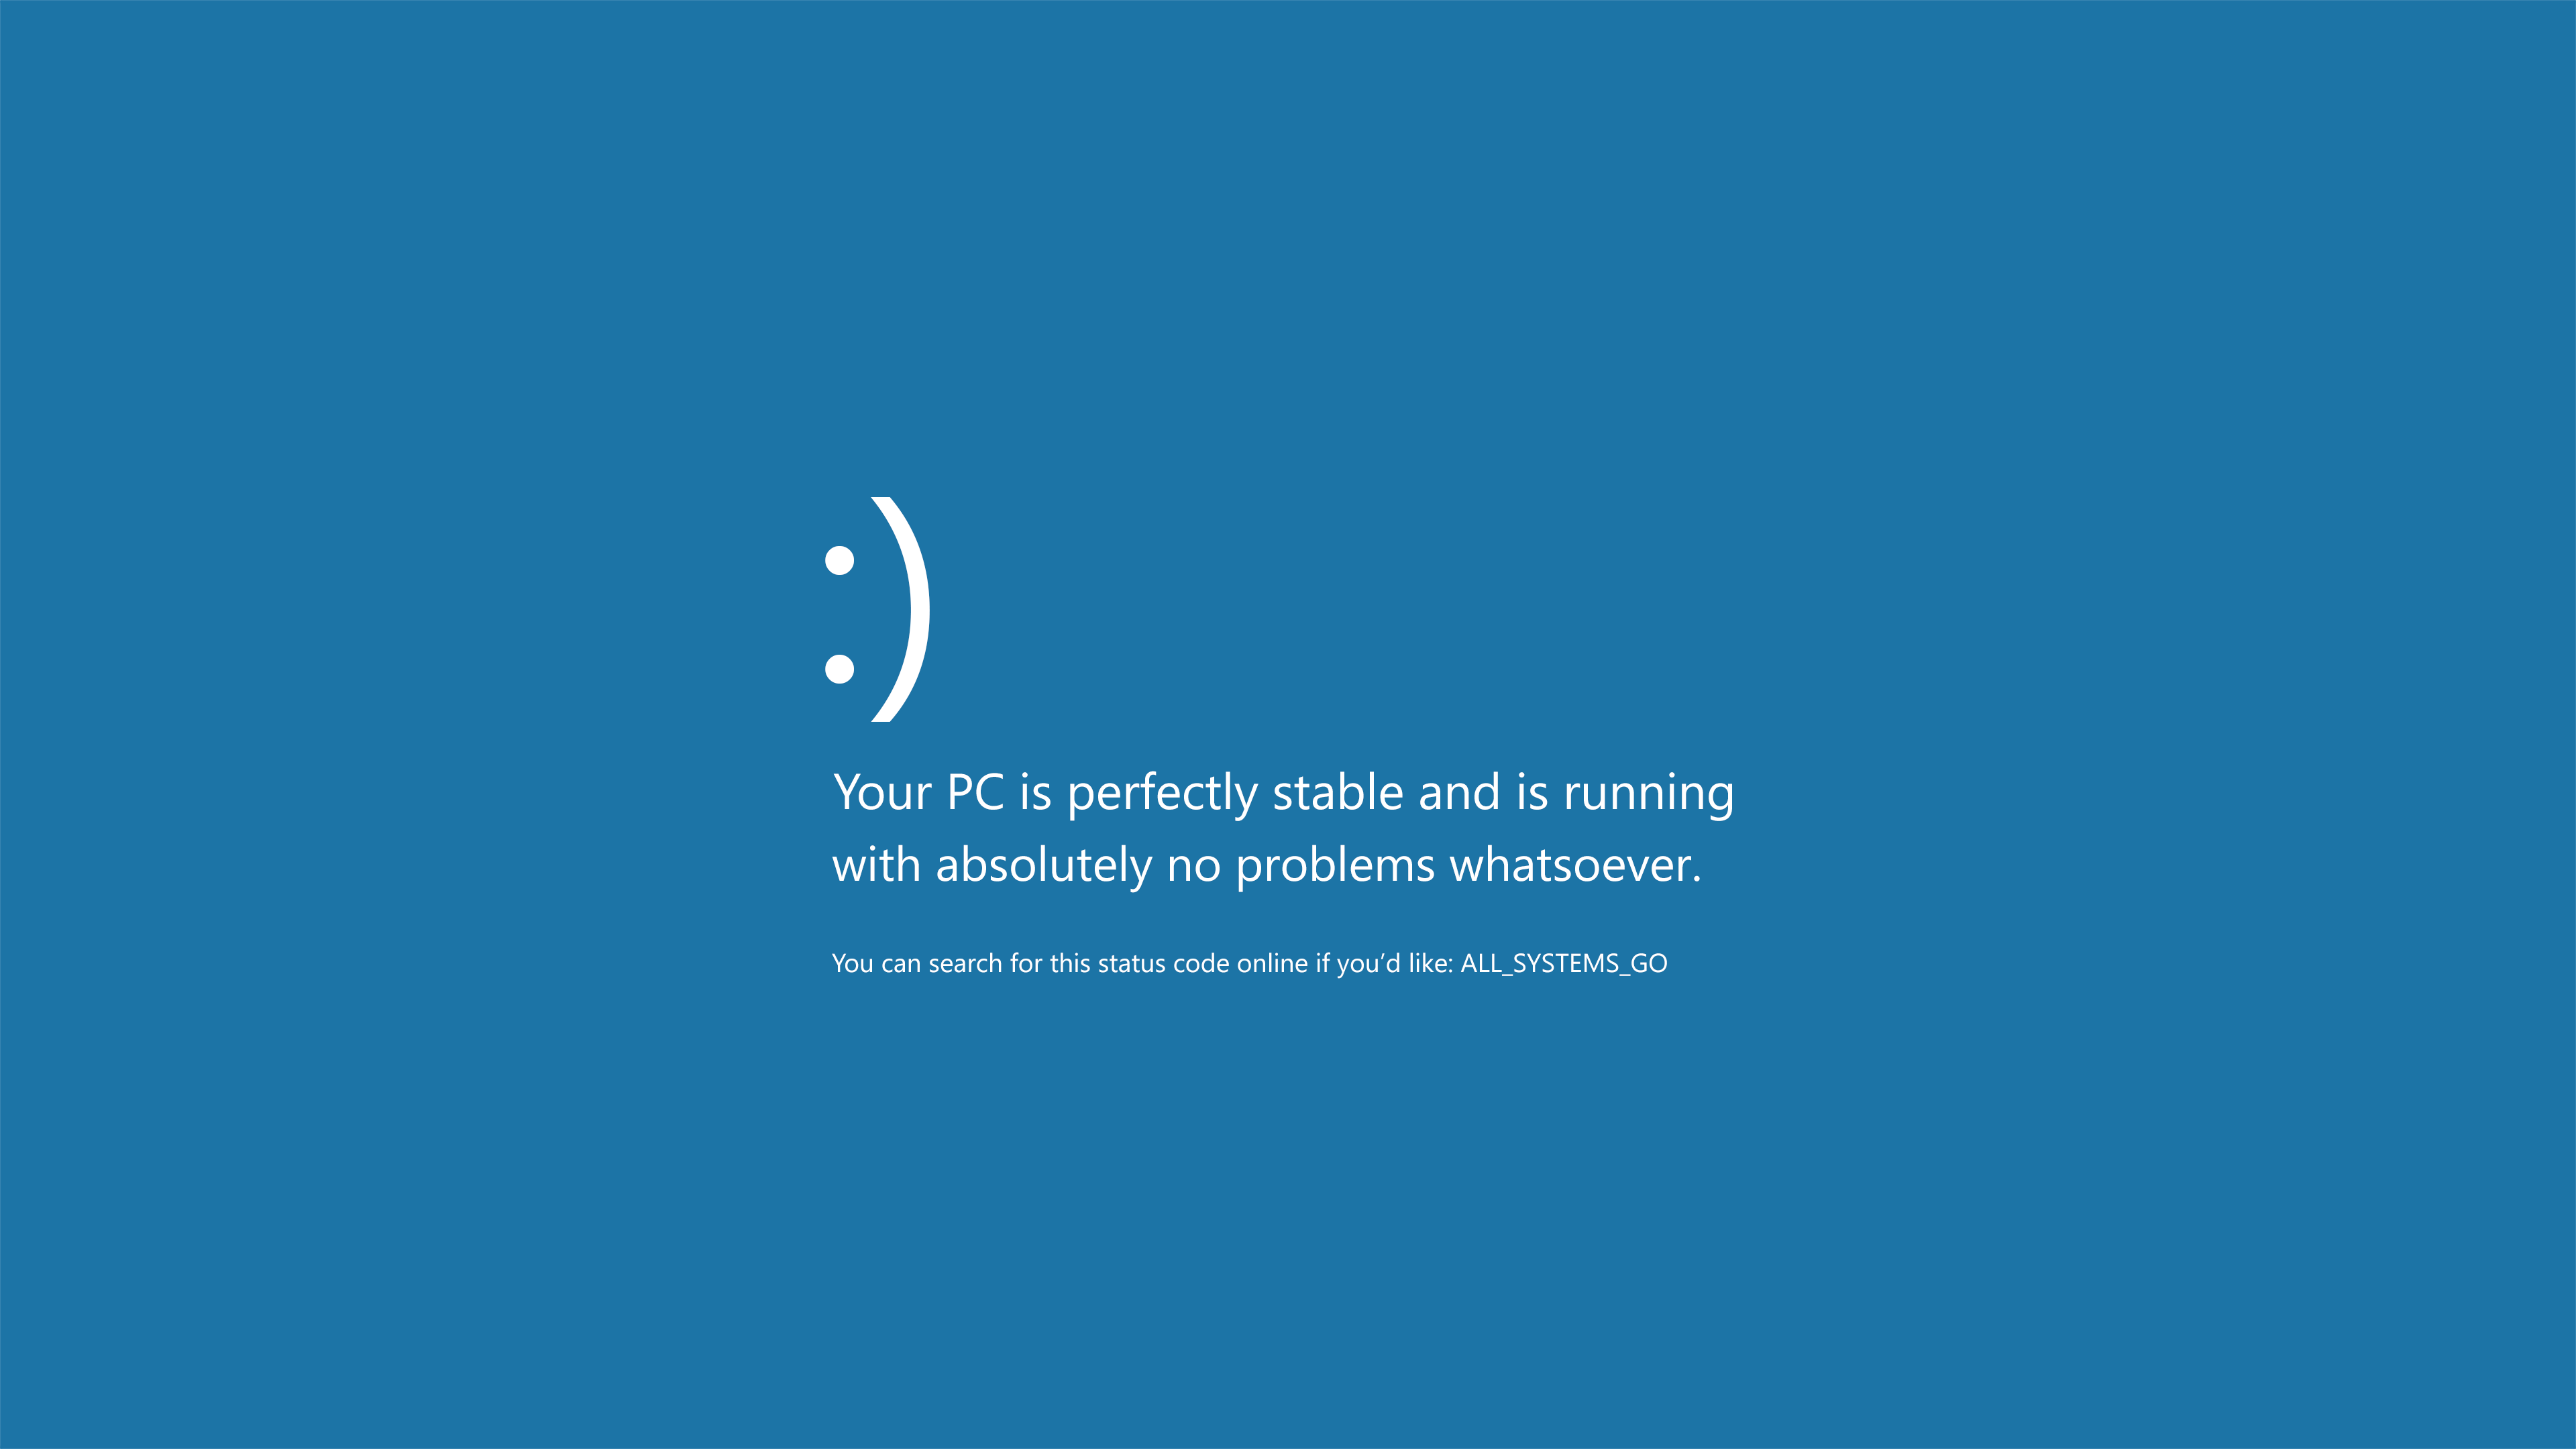 Tránh gây phiền hà và thất vọng khi sử dụng máy tính với hình nền Windows 10 lỗi màn hình xanh 4K. Hãy luôn lựa chọn những hình nền được chia sẻ chính thức và tin cậy để đảm bảo trải nghiệm tốt nhất cho thiết bị của bạn.